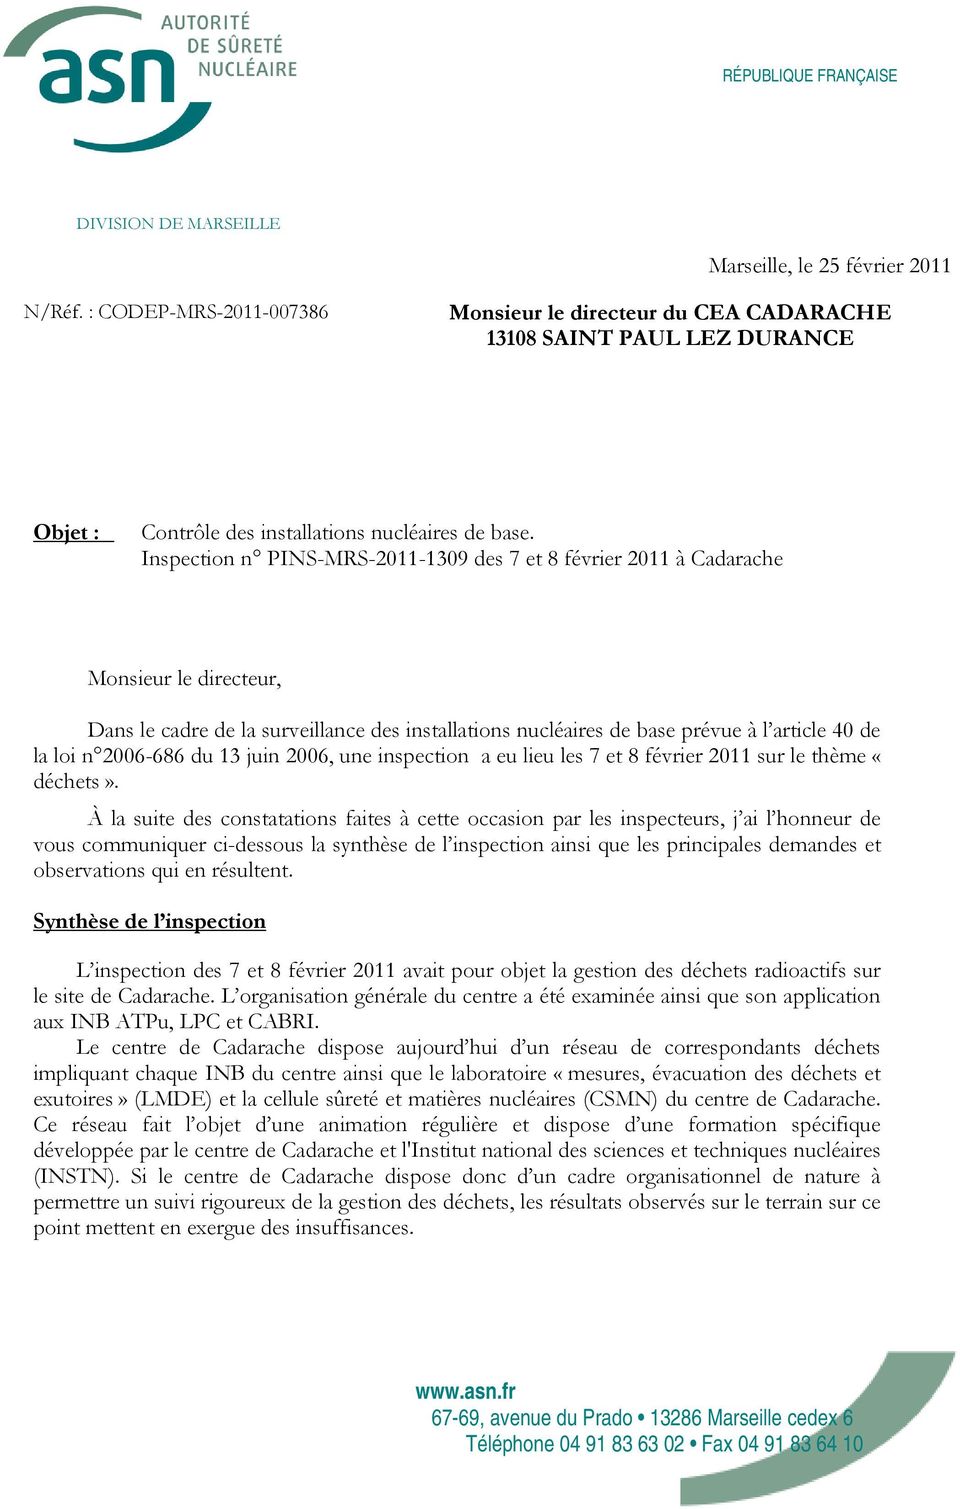 Inspection n PINS-MRS-2011-1309 des 7 et 8 février 2011 à Cadarache Monsieur le directeur, Dans le cadre de la surveillance des installations nucléaires de base prévue à l article 40 de la loi n